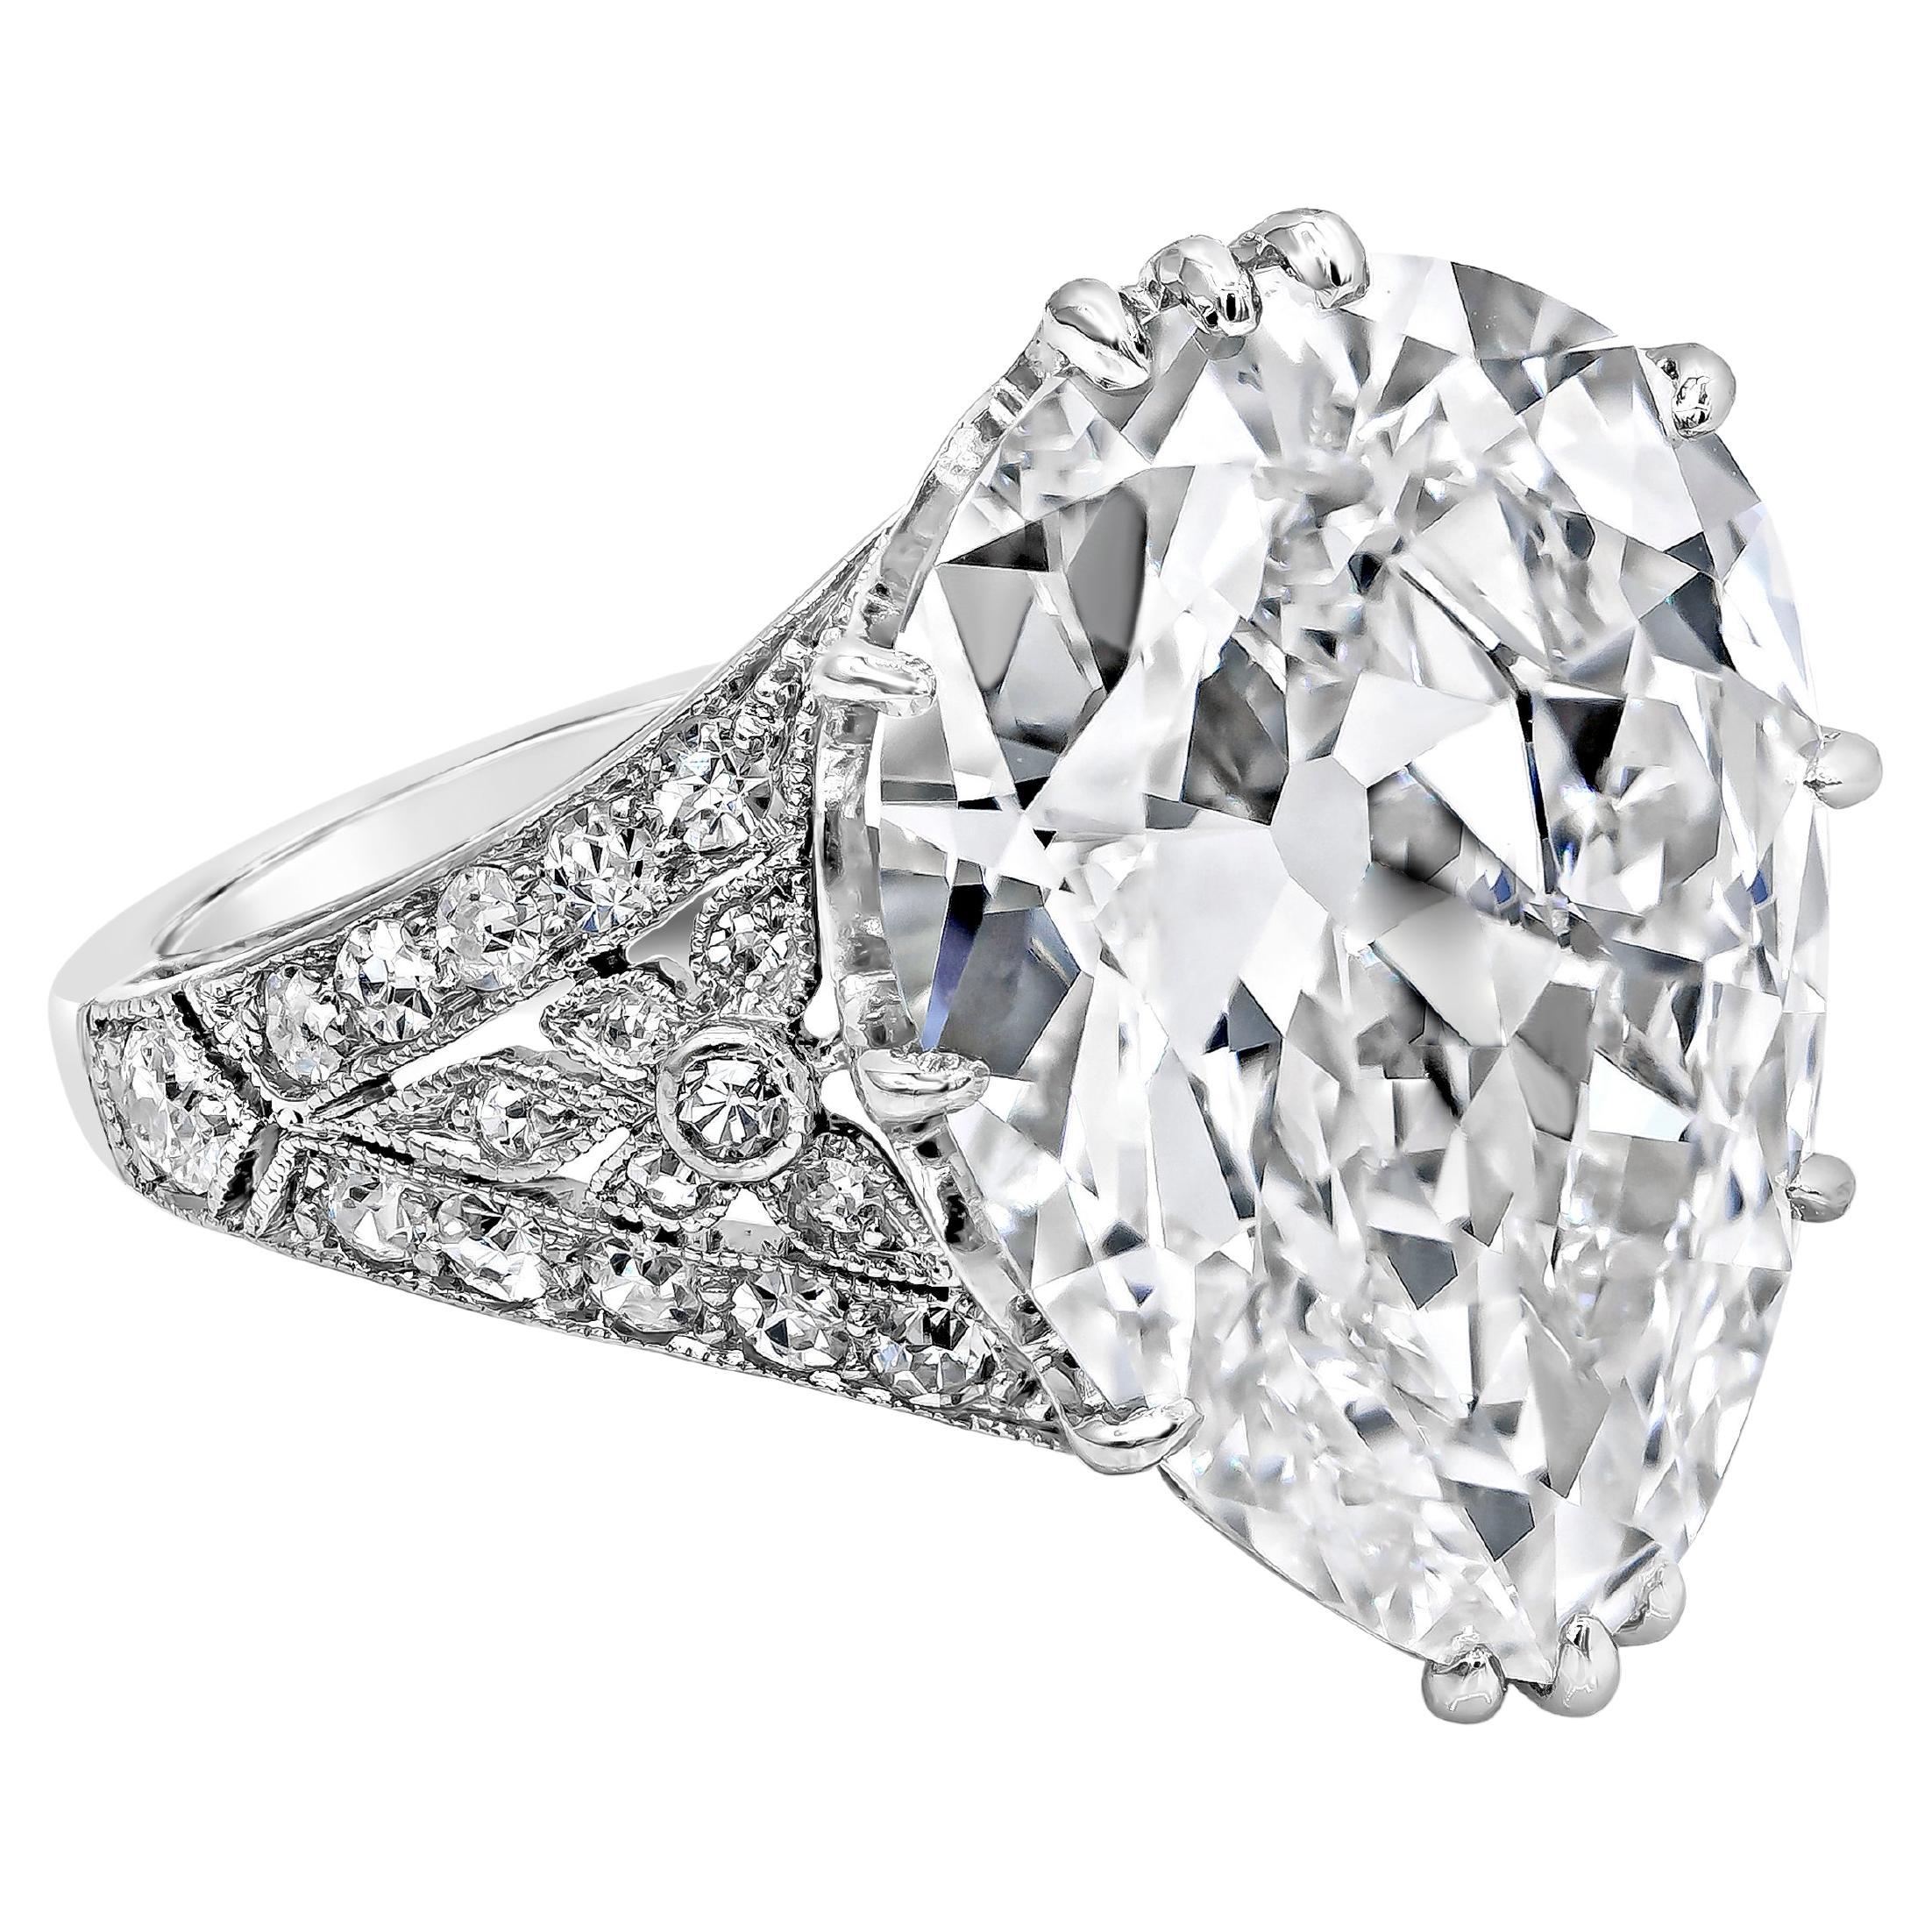 Ein wunderschöner und einzigartiger Ring mit einem GIA-zertifizierten 7,03 Karat birnenförmigen Diamanten, Farbe G und Reinheit VVS1. In einer antiken Fassung mit 34 Diamanten im Einzelschliff von insgesamt 0,37 Karat. Hergestellt mit Platin. Größe